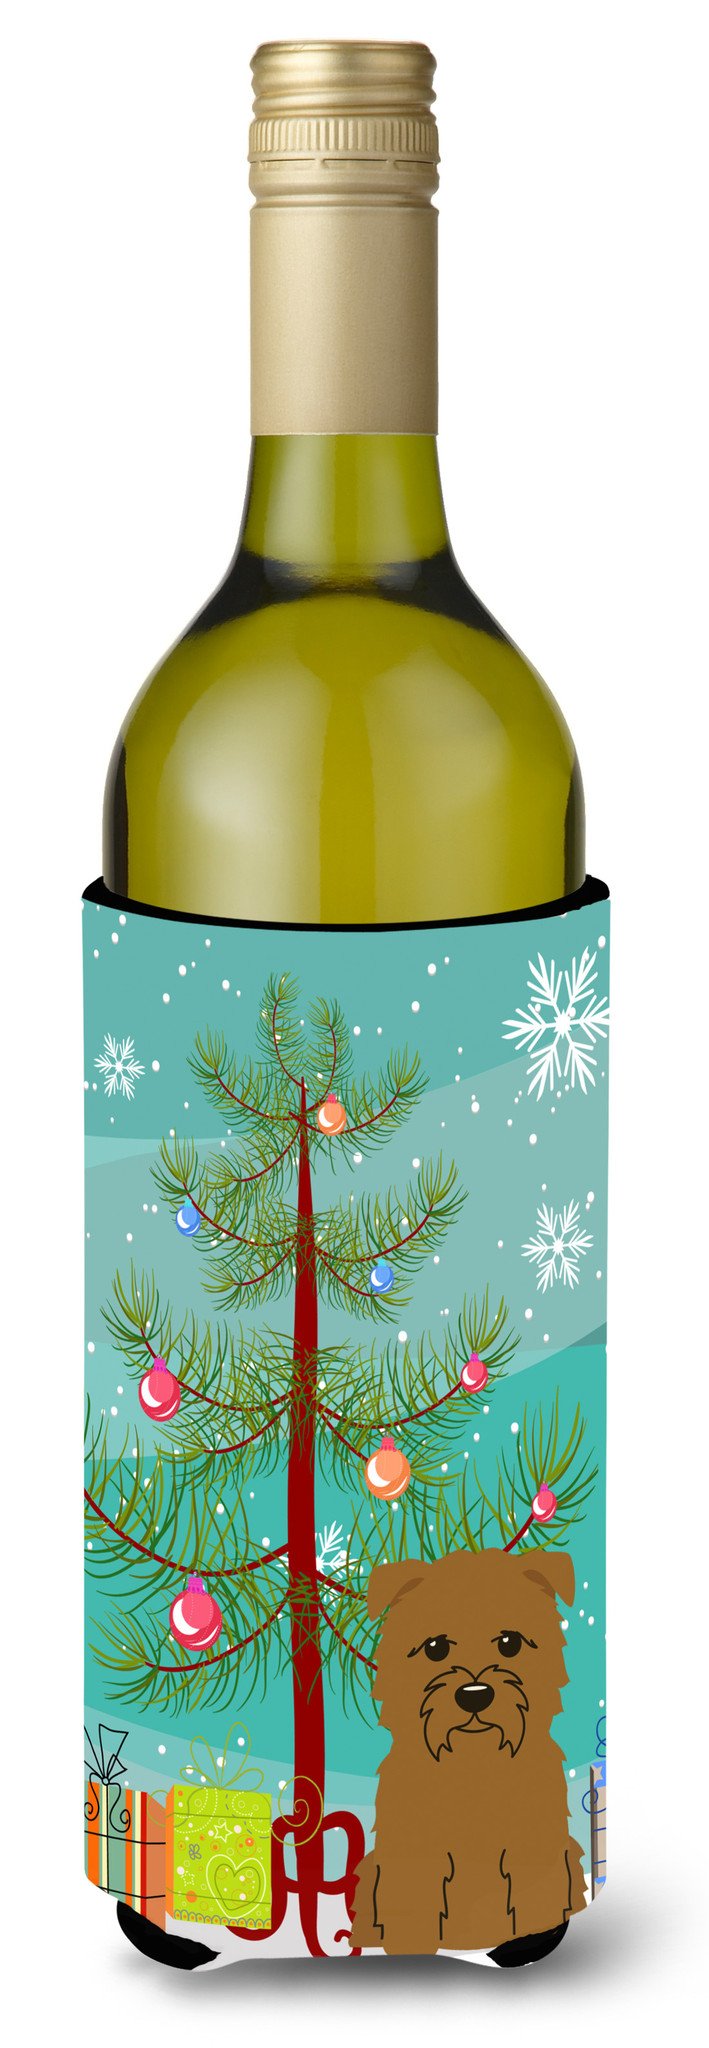 Merry Christmas Tree Glen of Imal Tan Wine Bottle Beverge Insulator Hugger BB4185LITERK by Caroline's Treasures